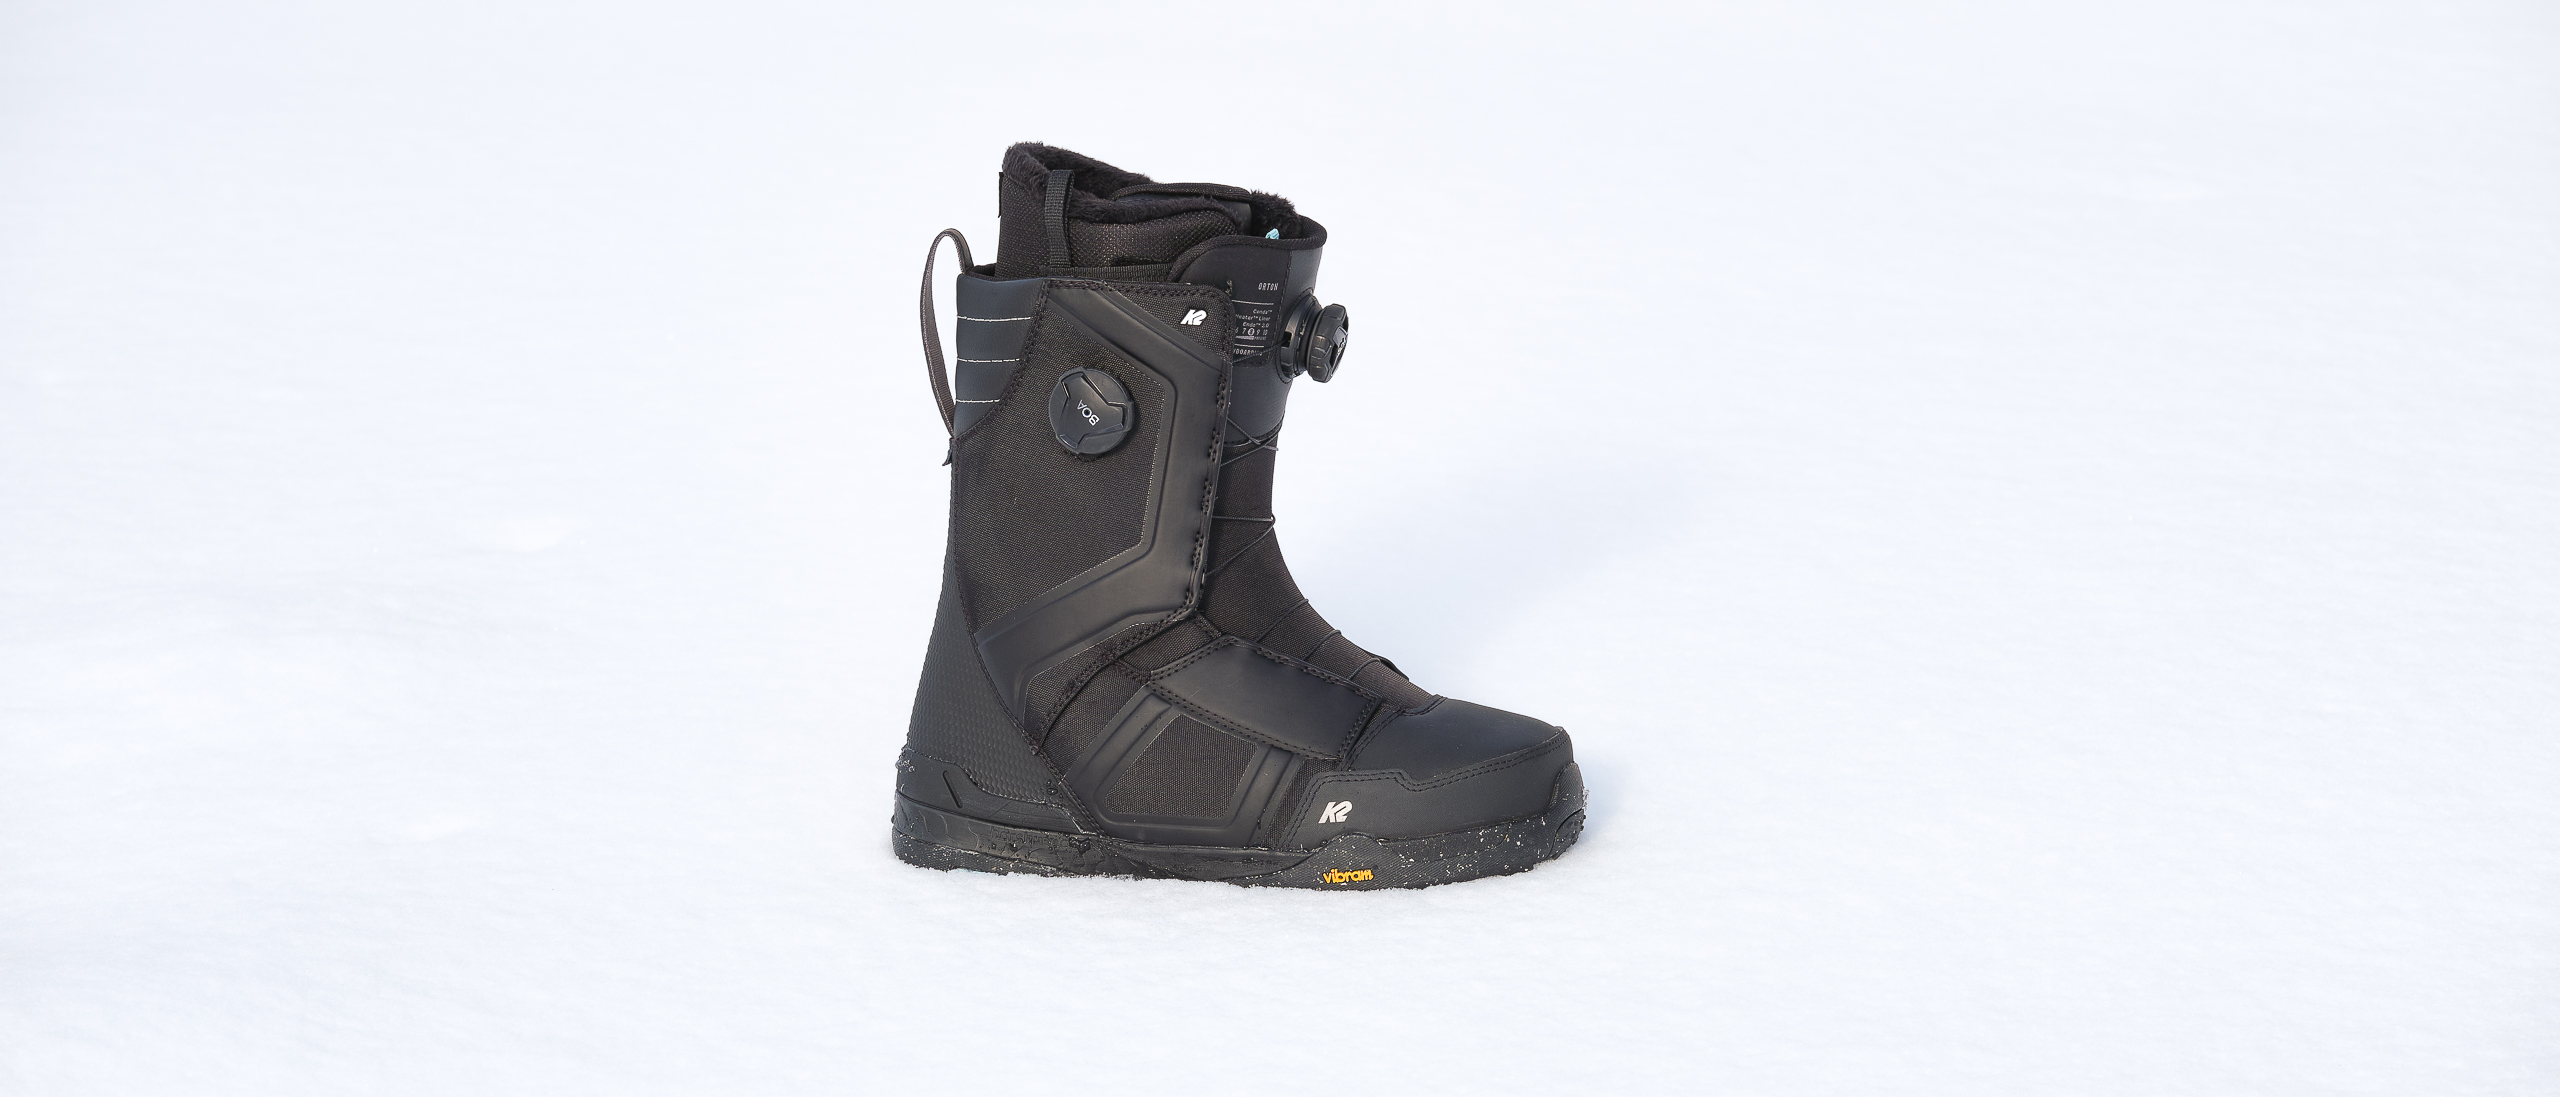 K2 12 US Ski & Snowboard Boots for Men